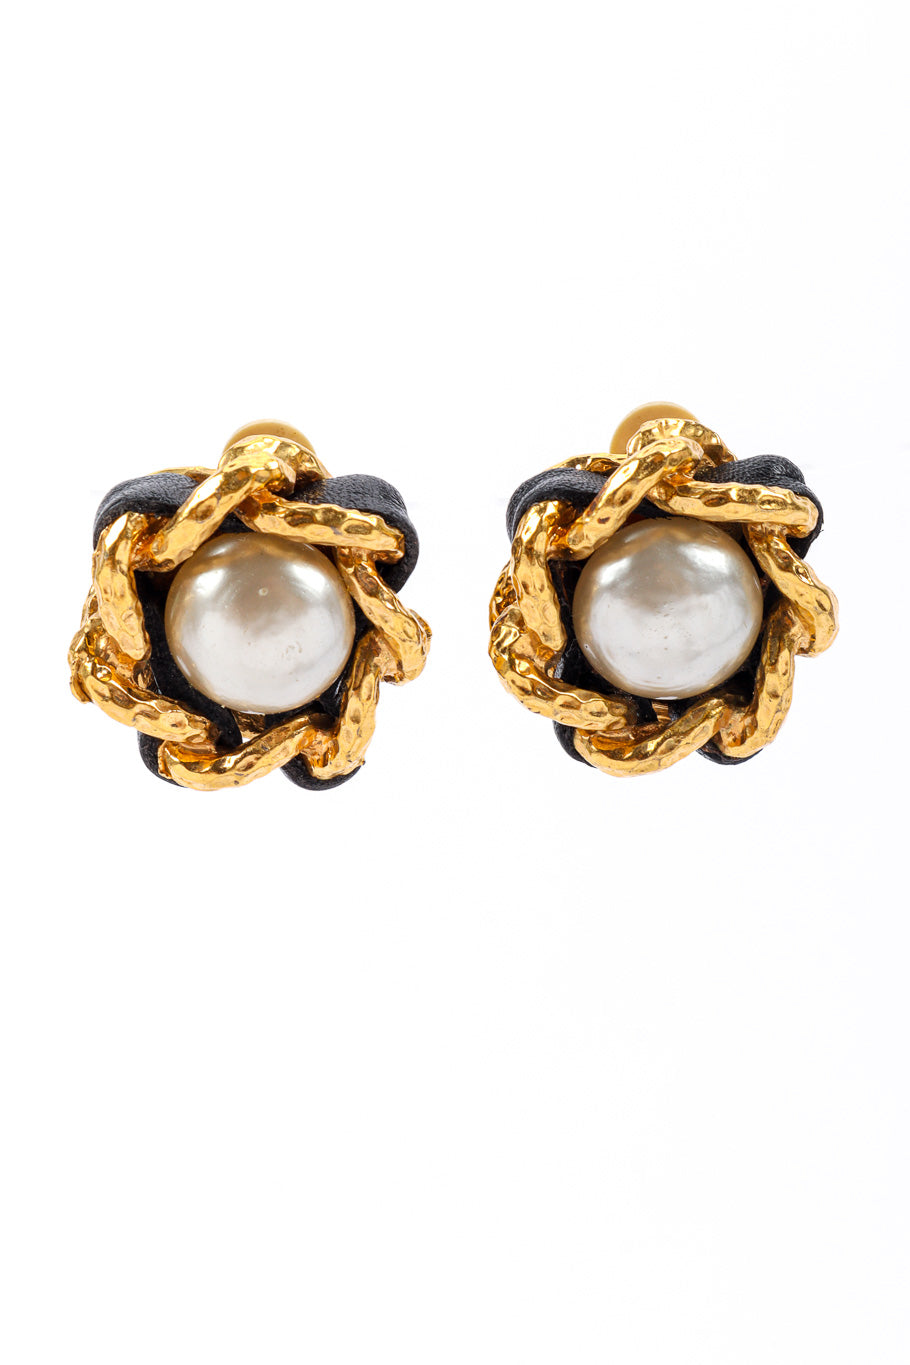 Chanel Pearl Earrings